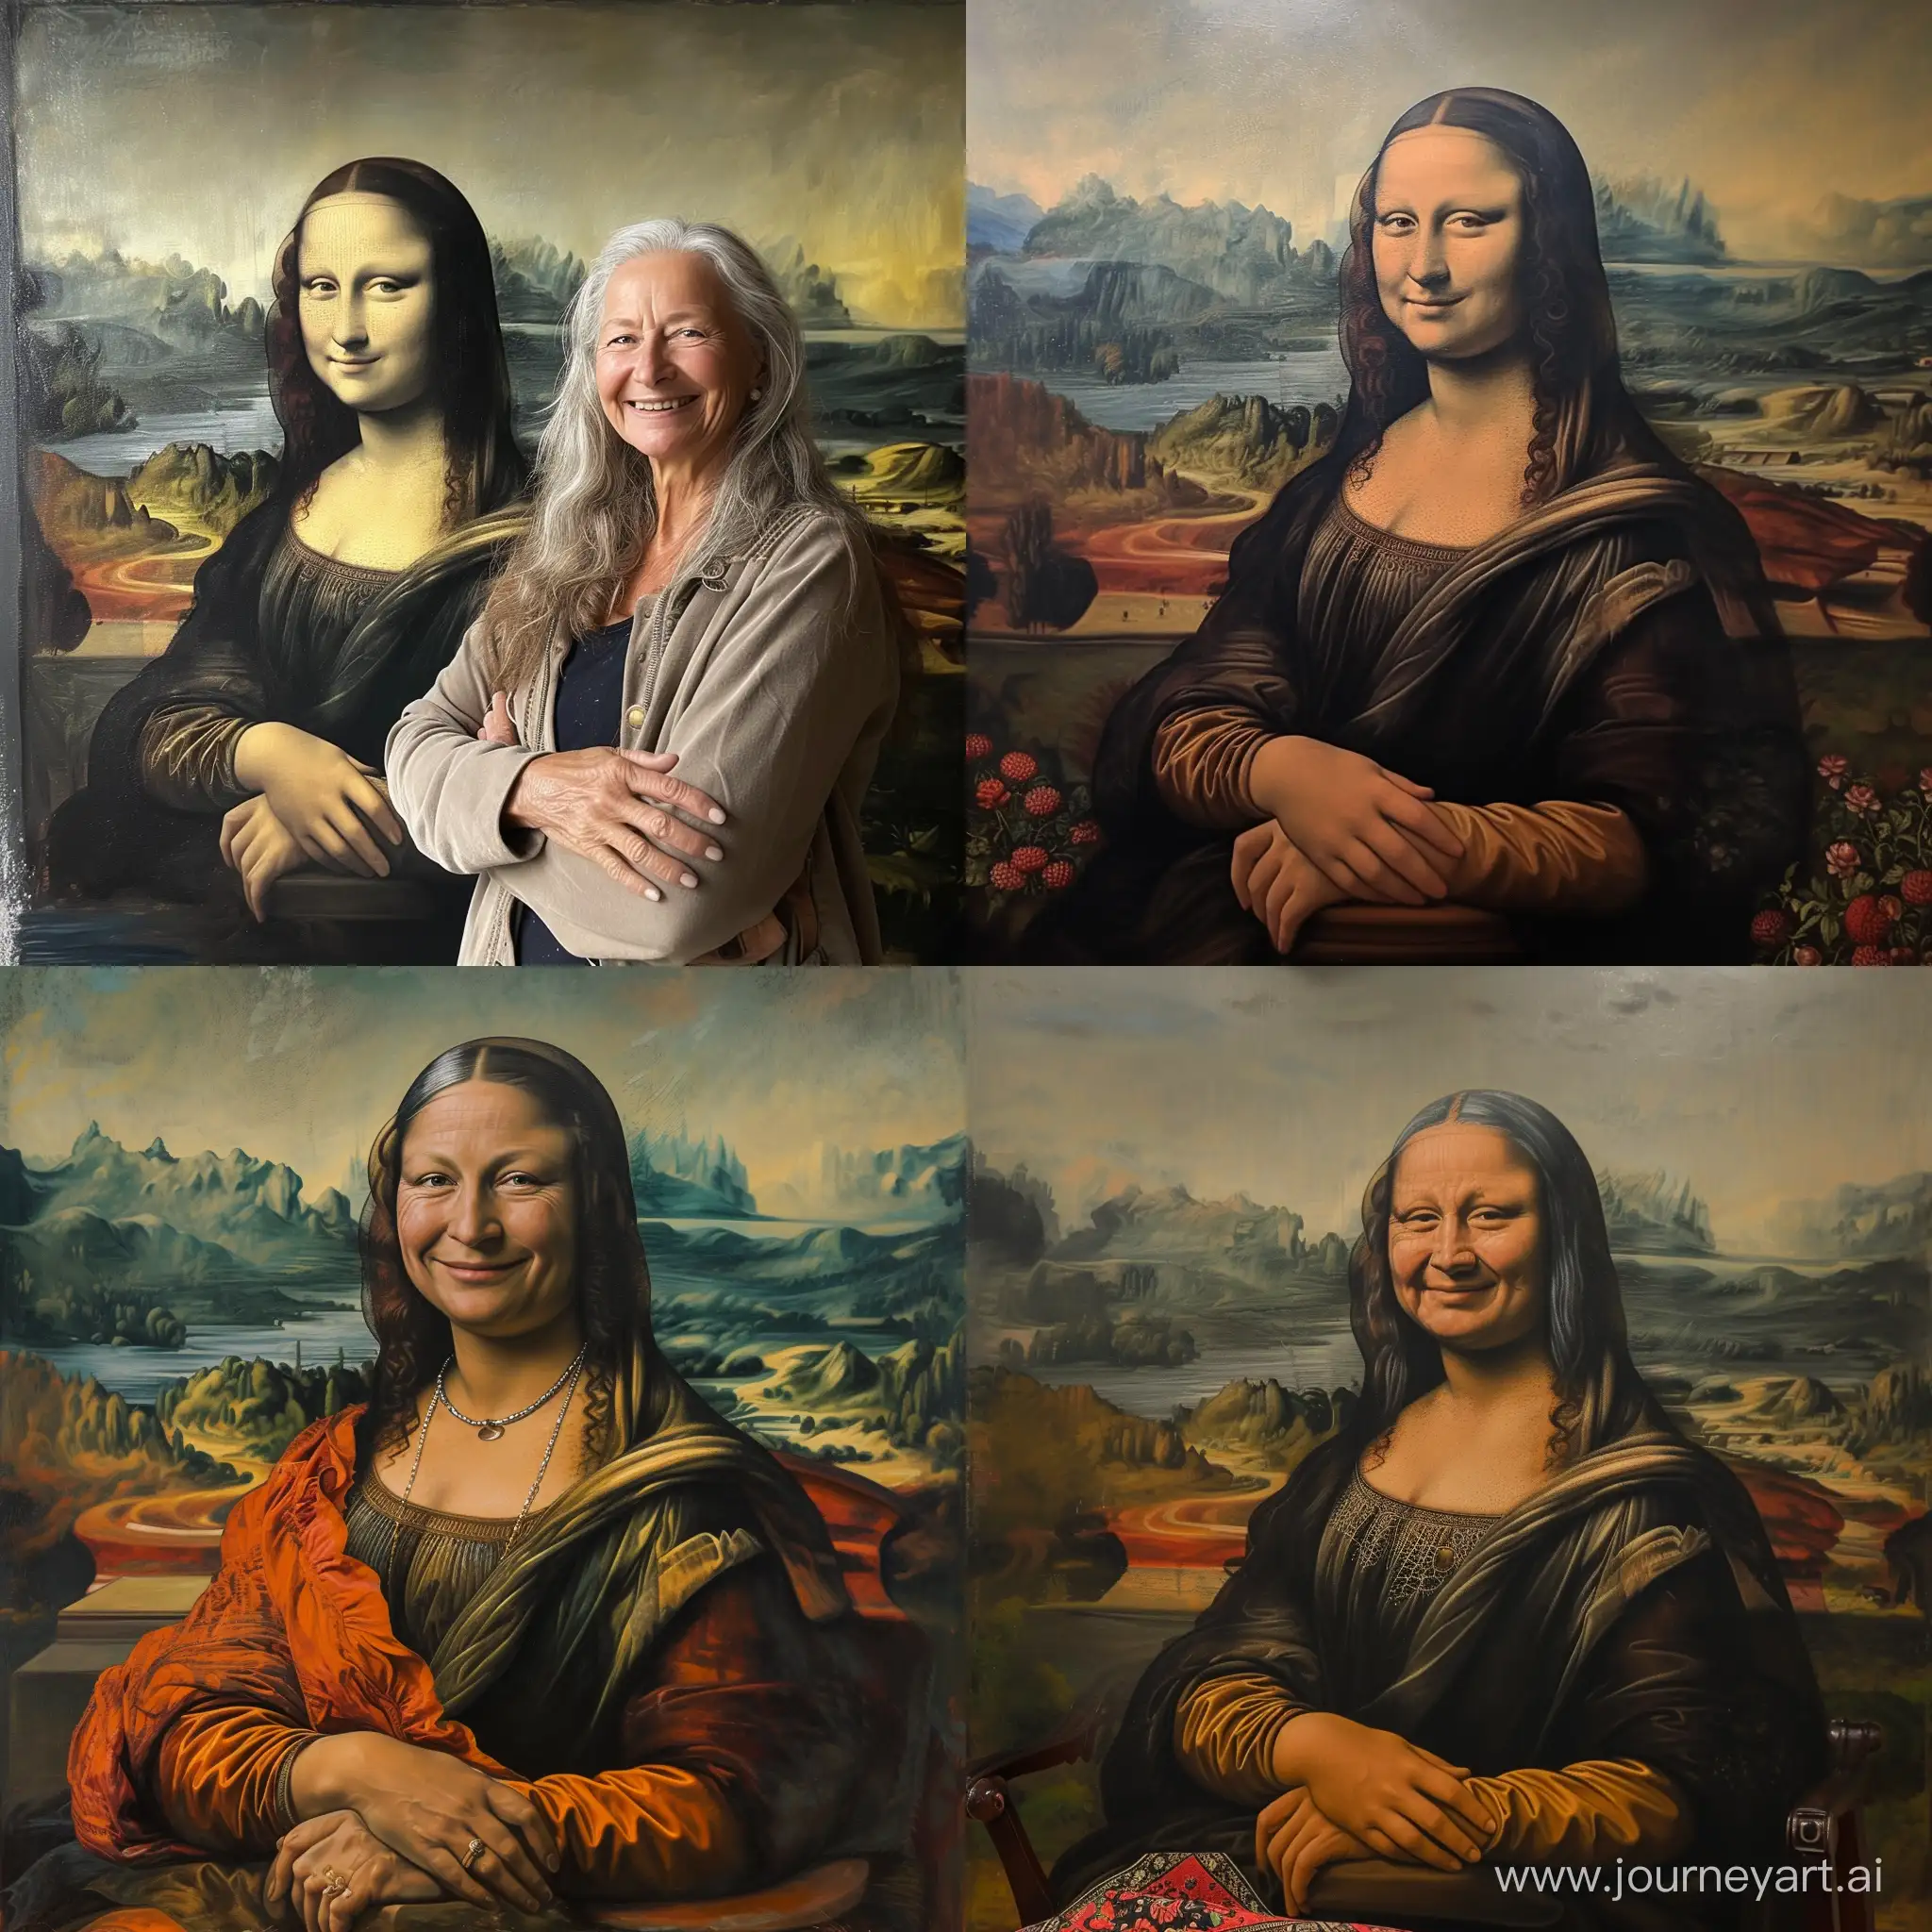 Erna-Solberg-Portrayed-as-Joyful-Mona-Lisa-Painting